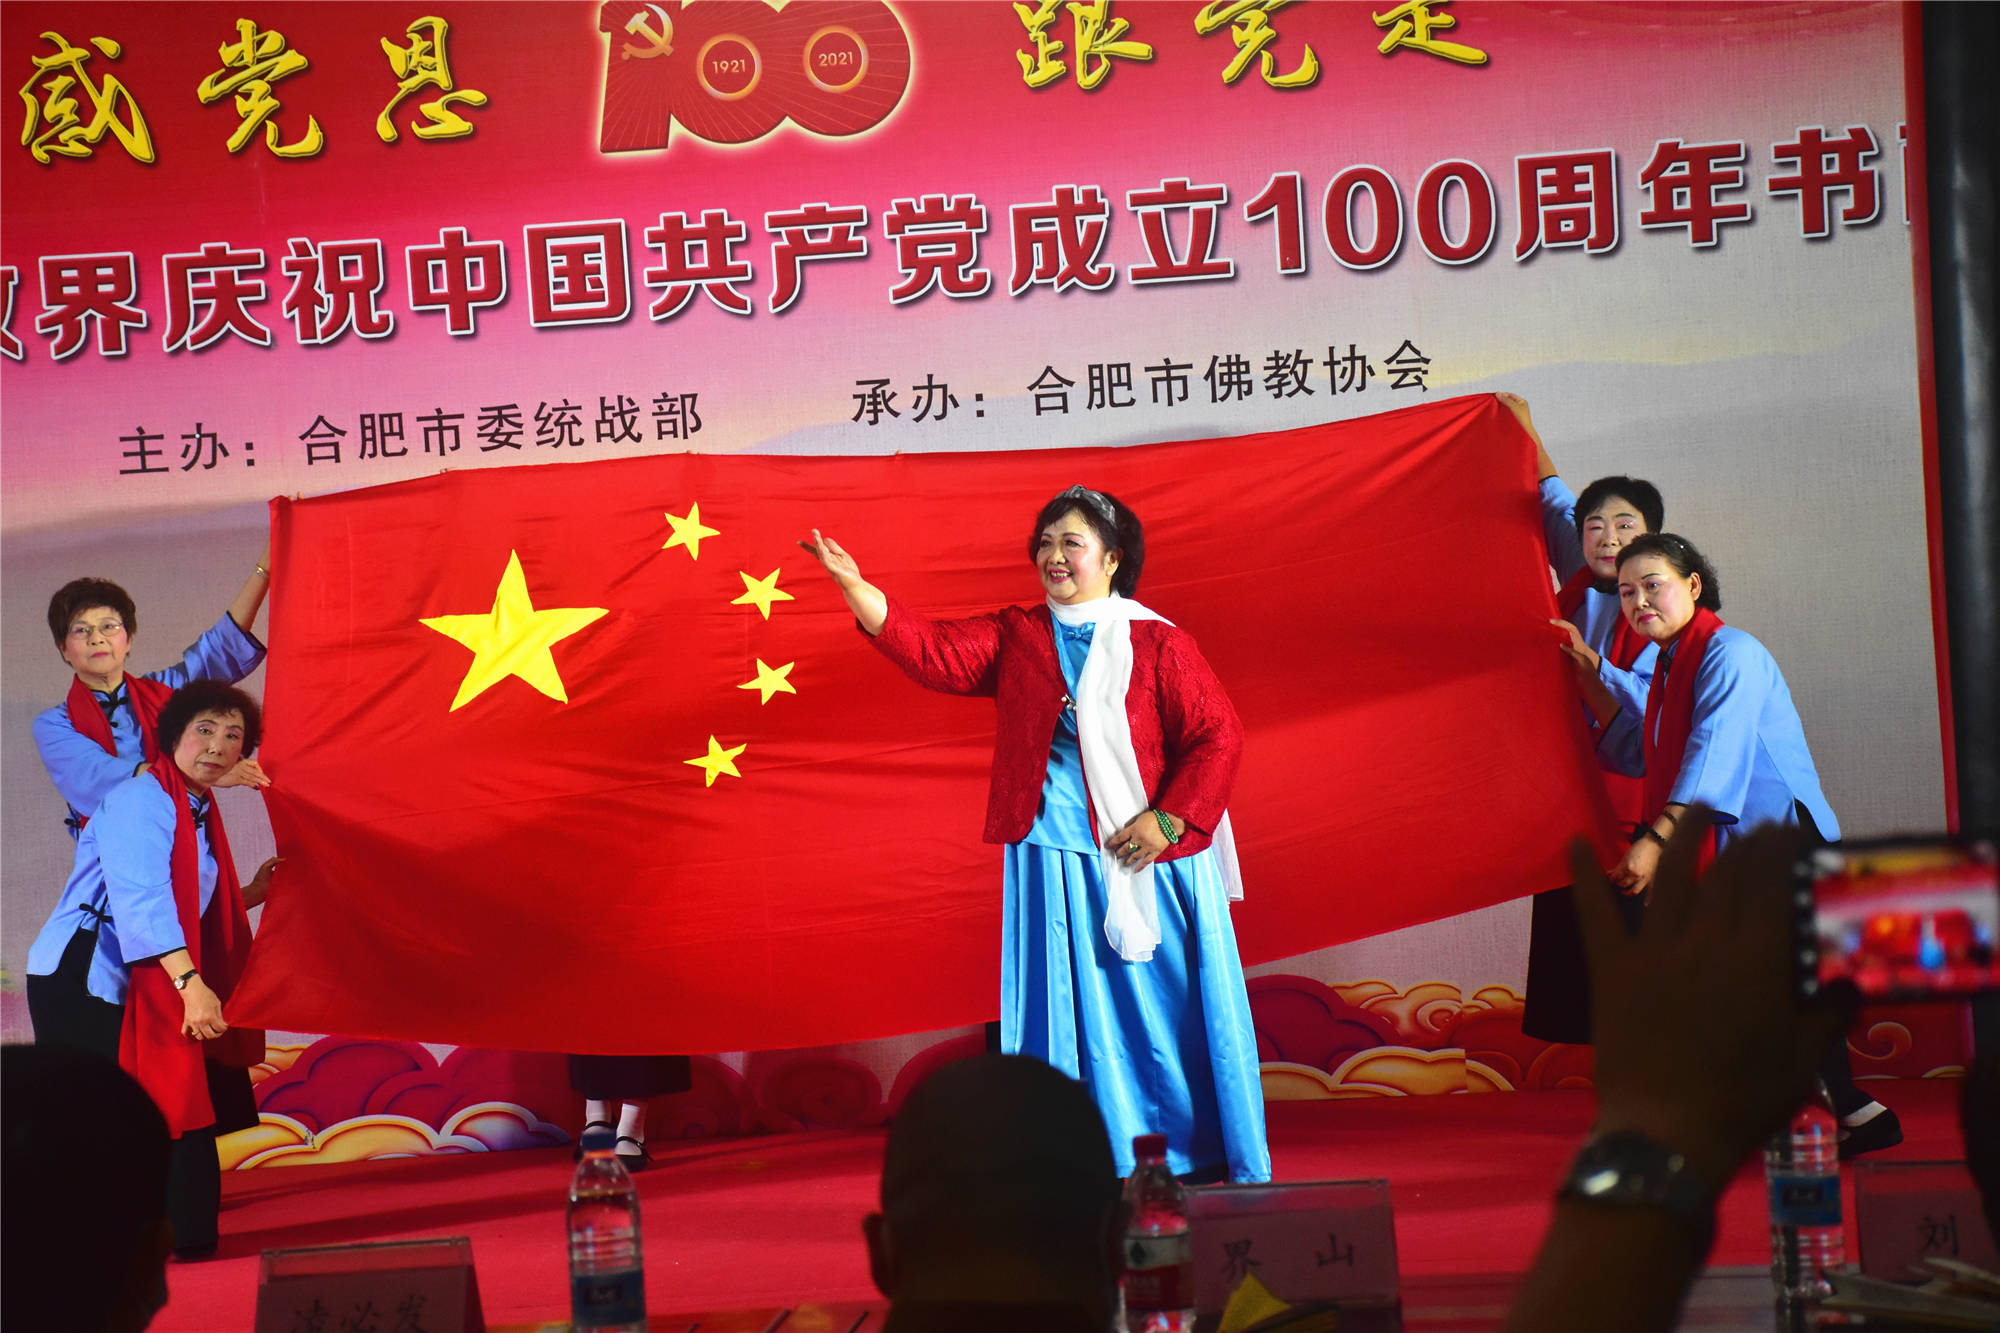 【图】合肥佛教界庆祝建党100周年书画展开幕